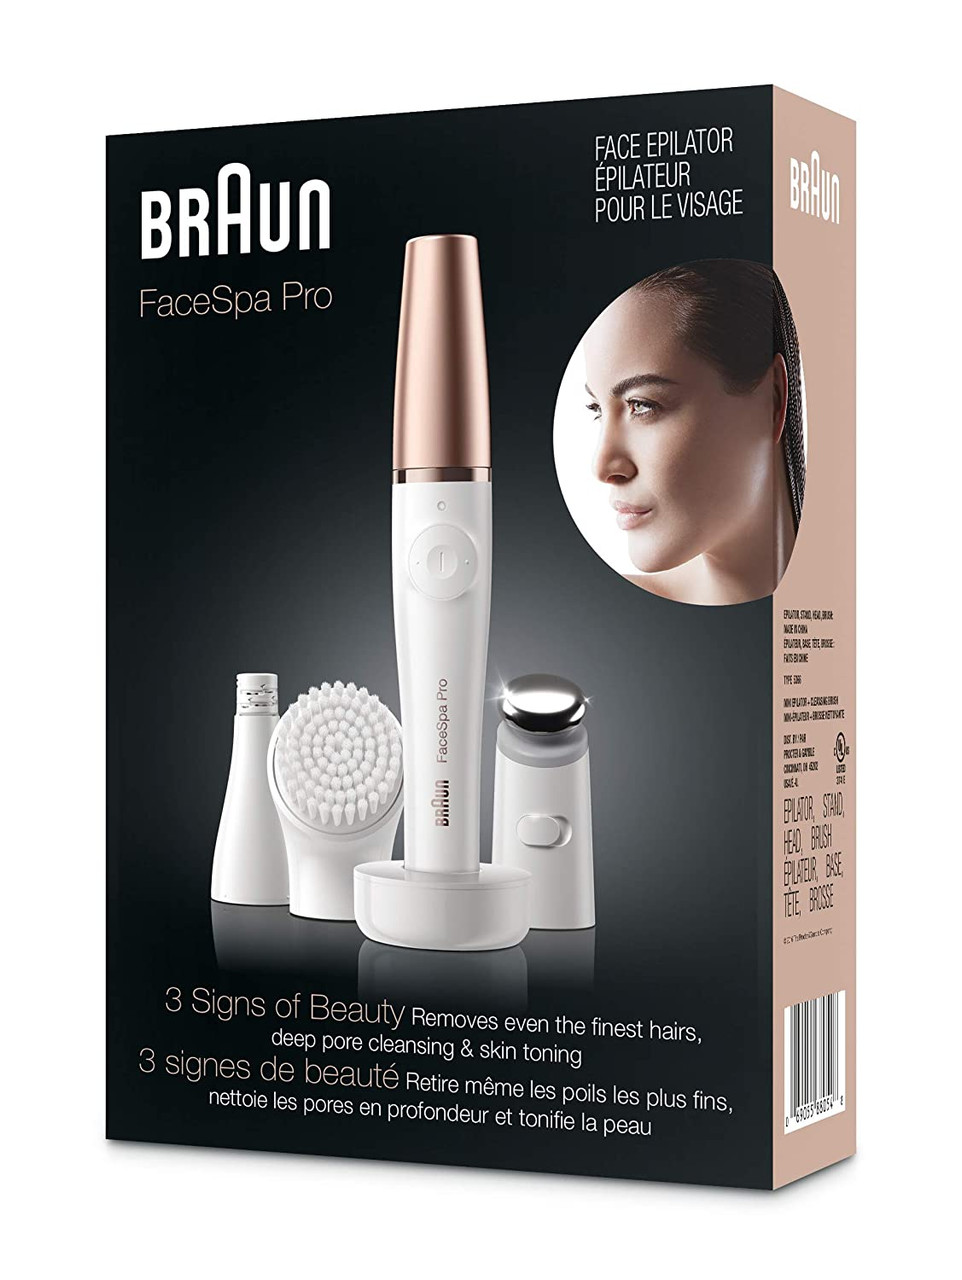  Braun Face Epilator Facespa Pro 910, Facial Hair